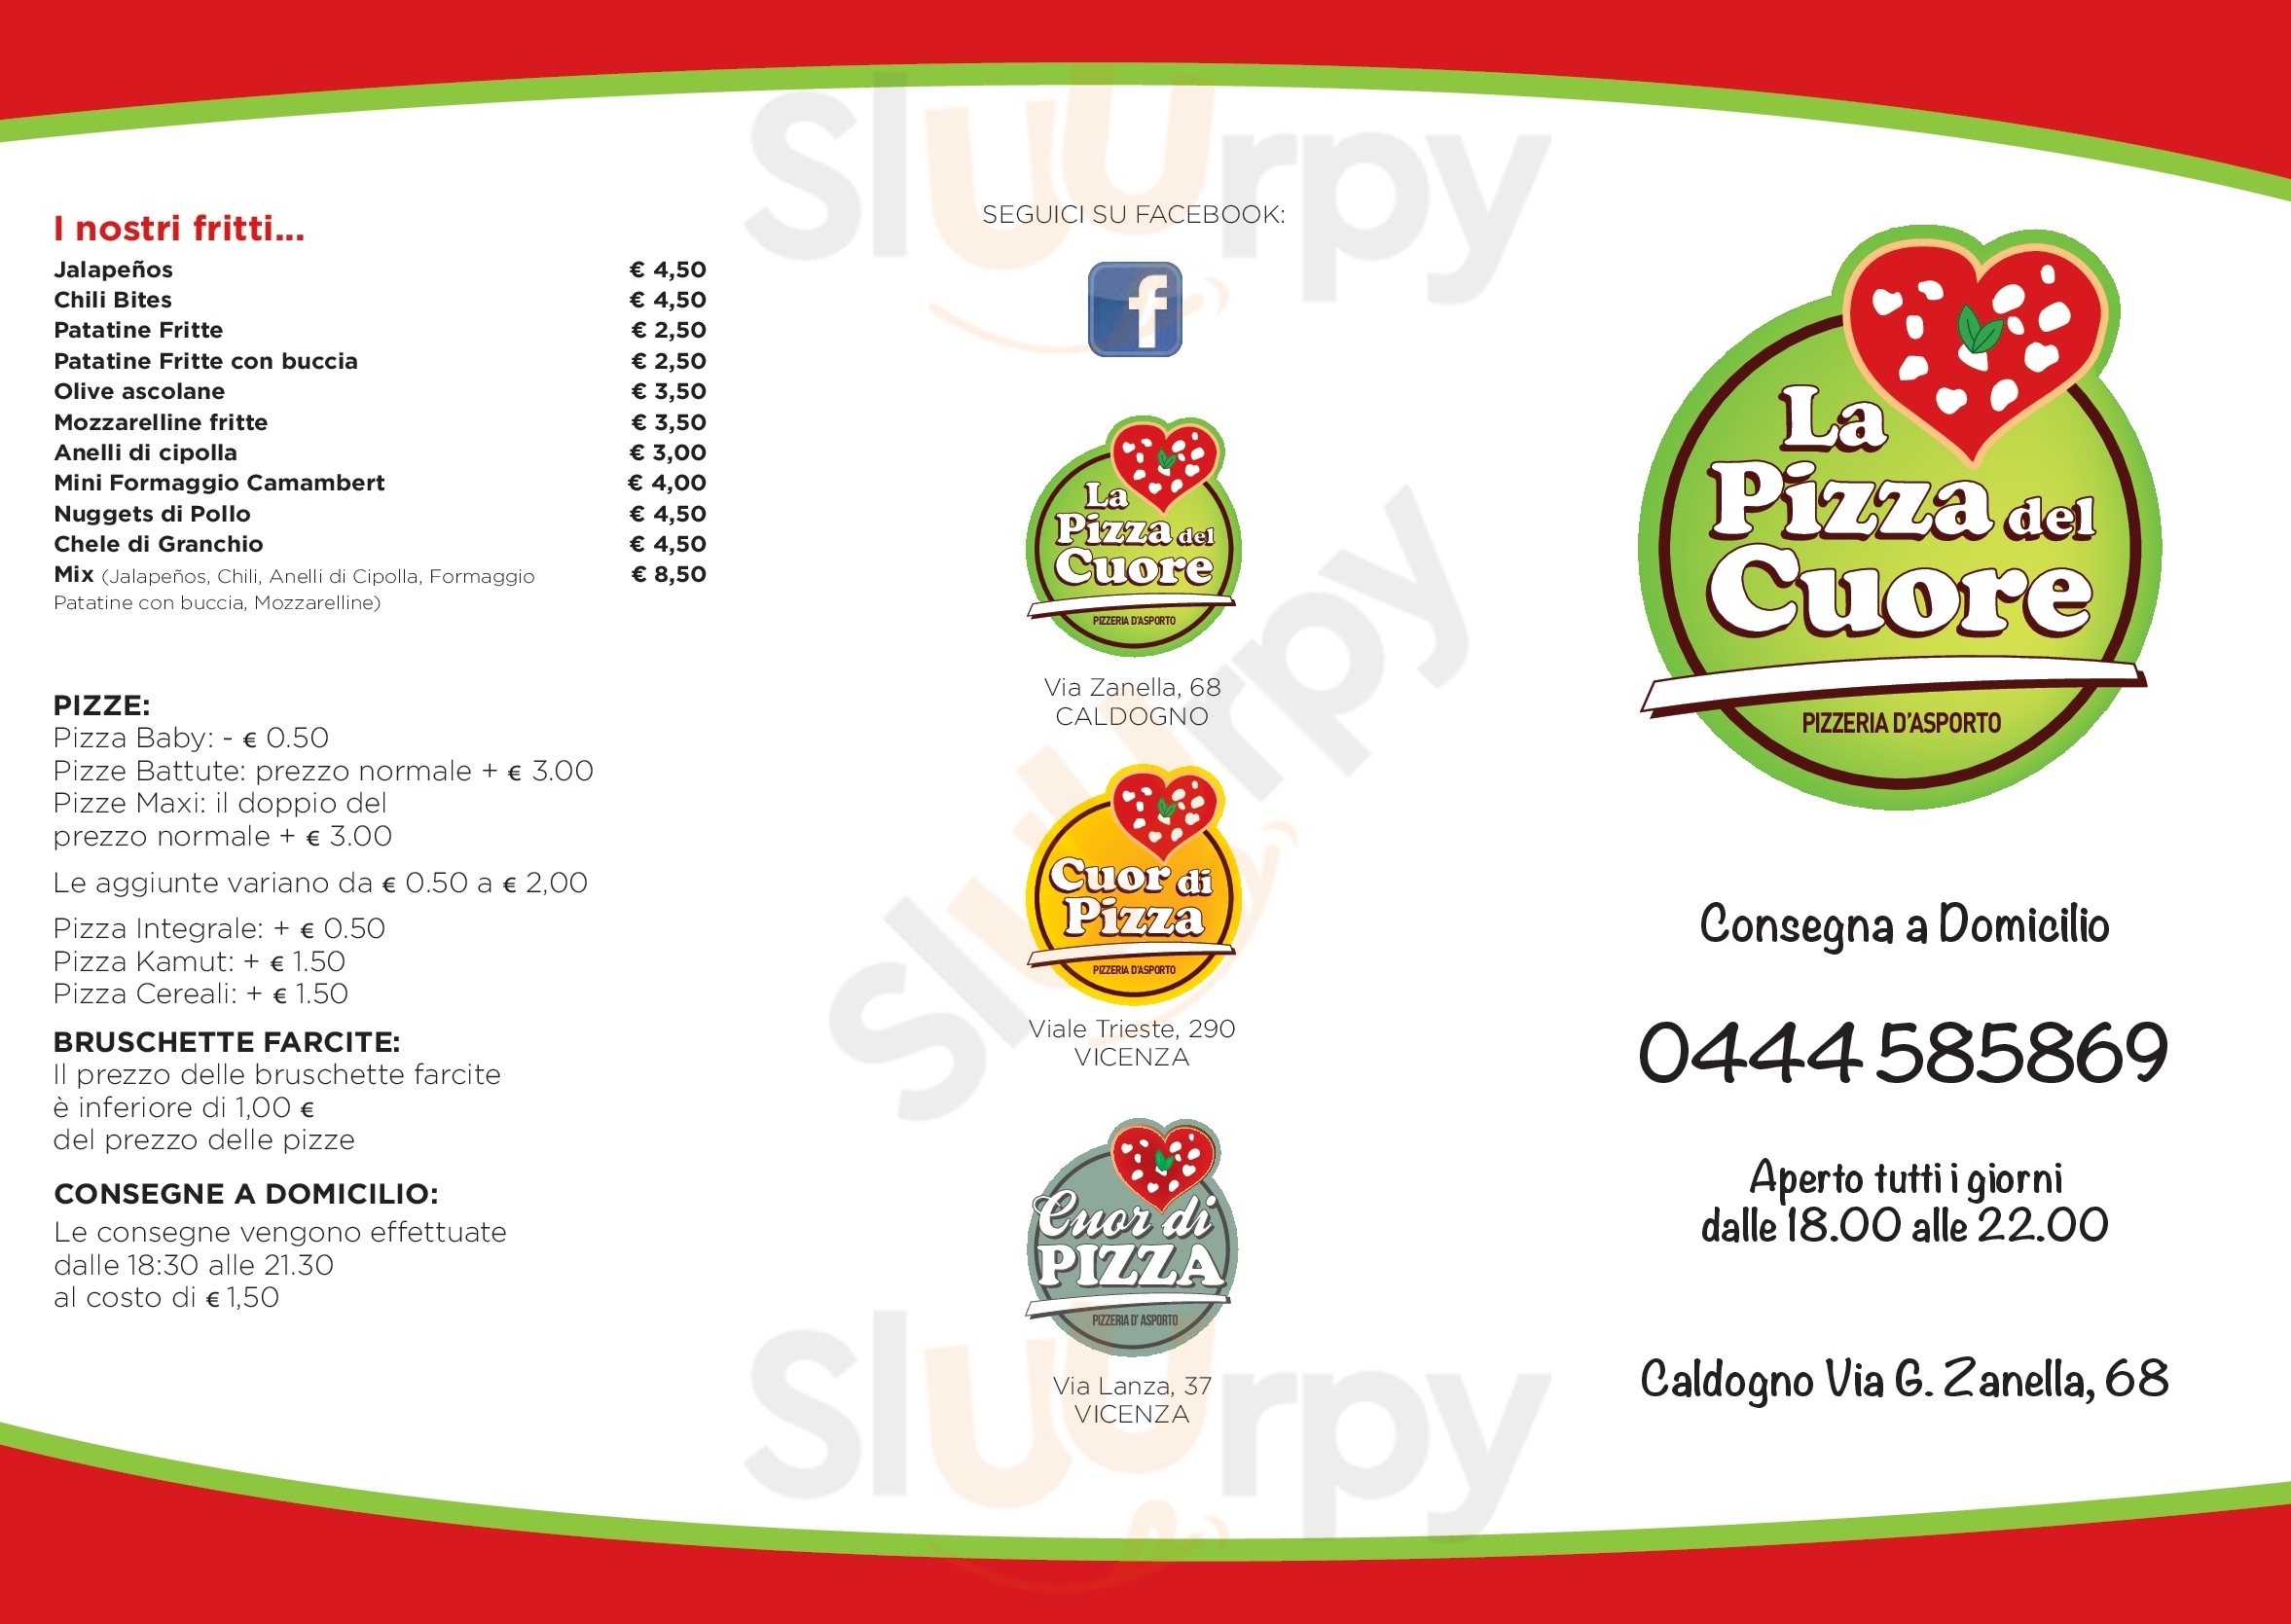 Pizzeria D'Asporto La Pizza del Cuore Caldogno menù 1 pagina